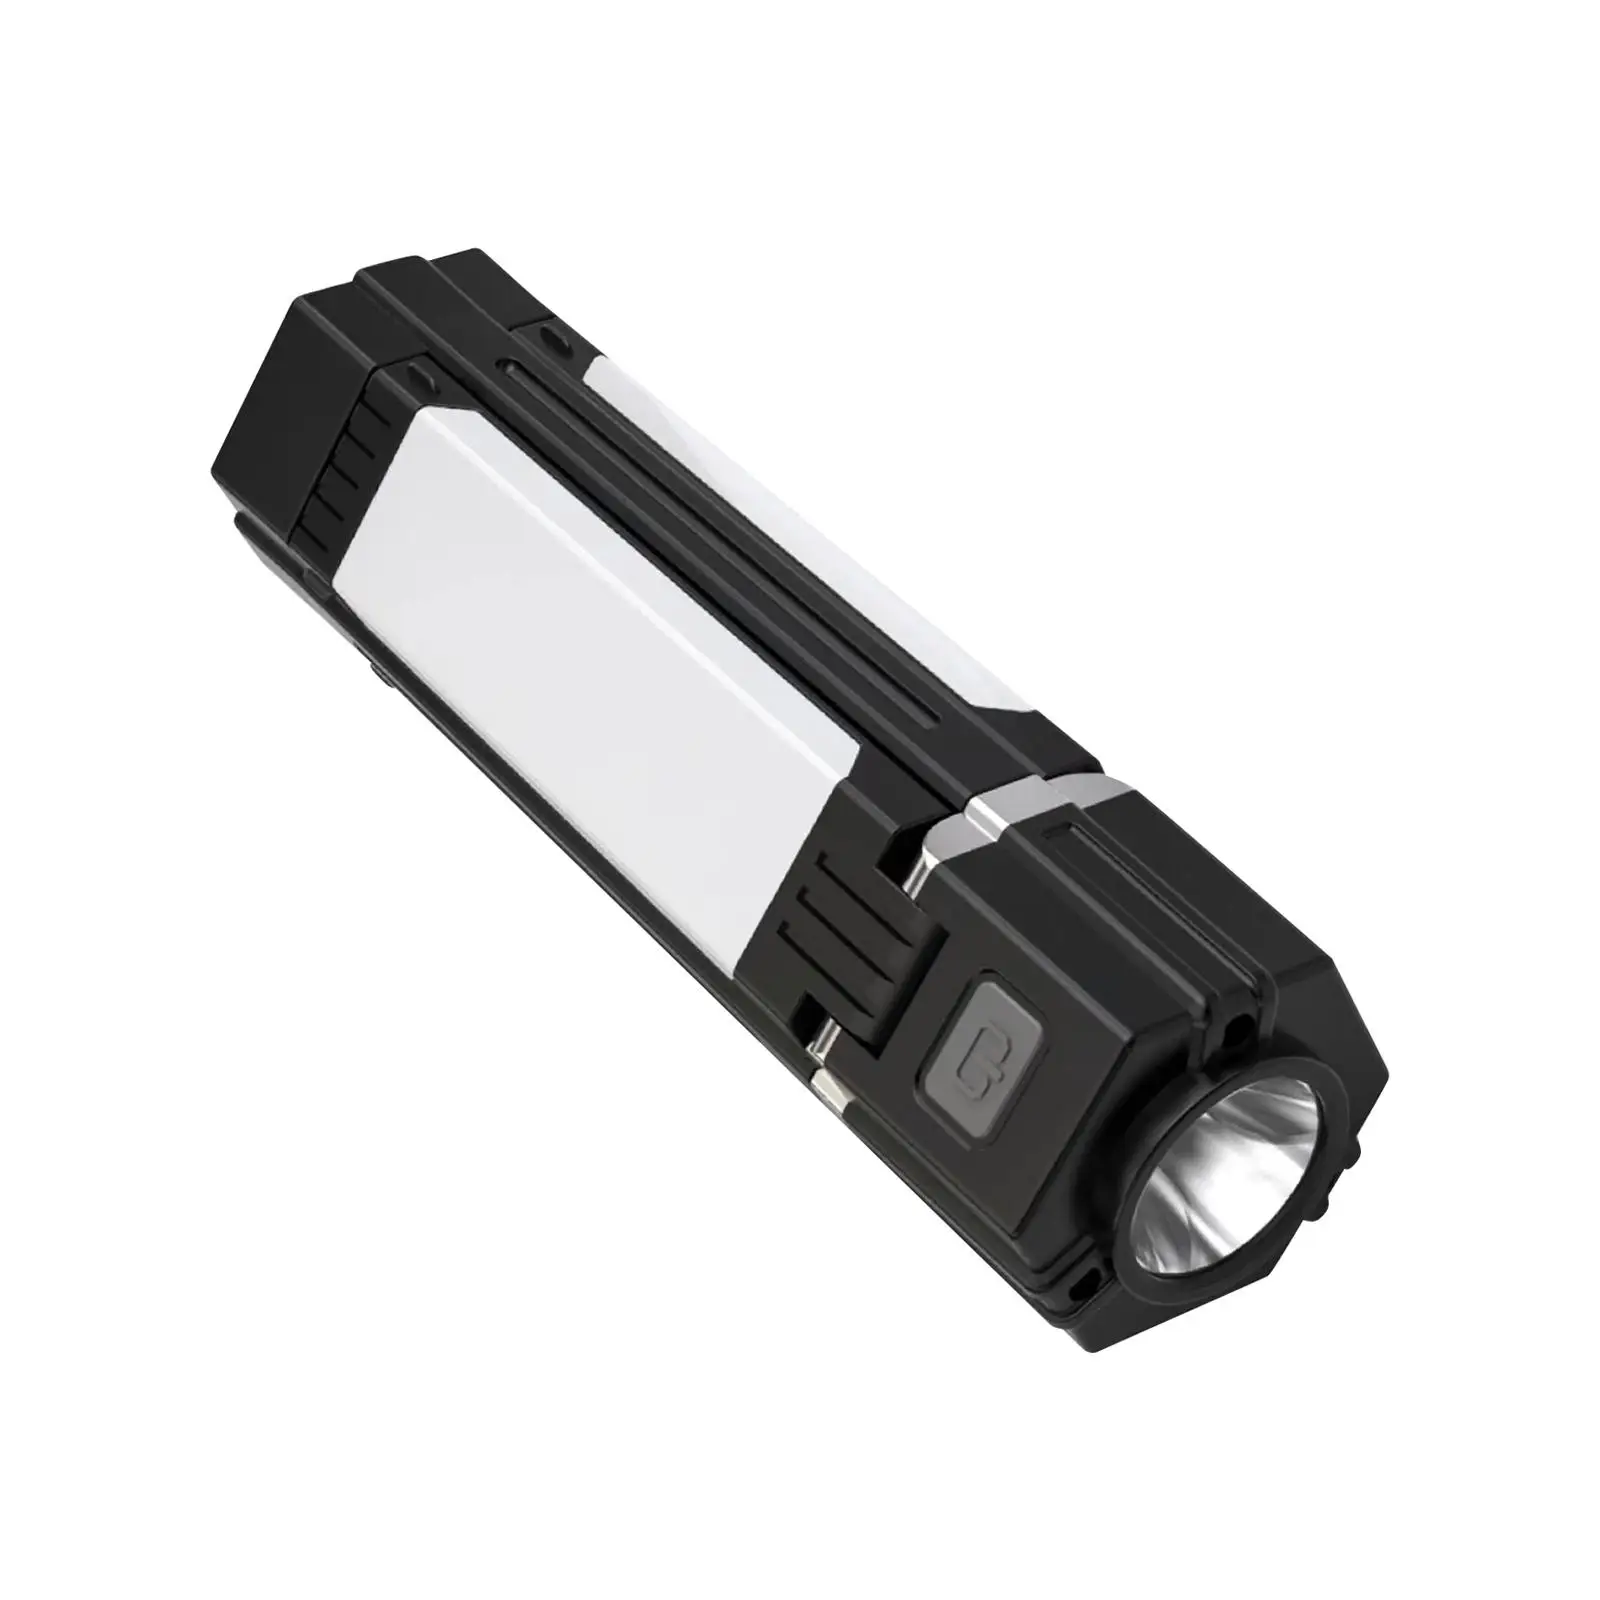 LED Flashlight Lantern Compact Handheld Torch for Fishing Camping Garage